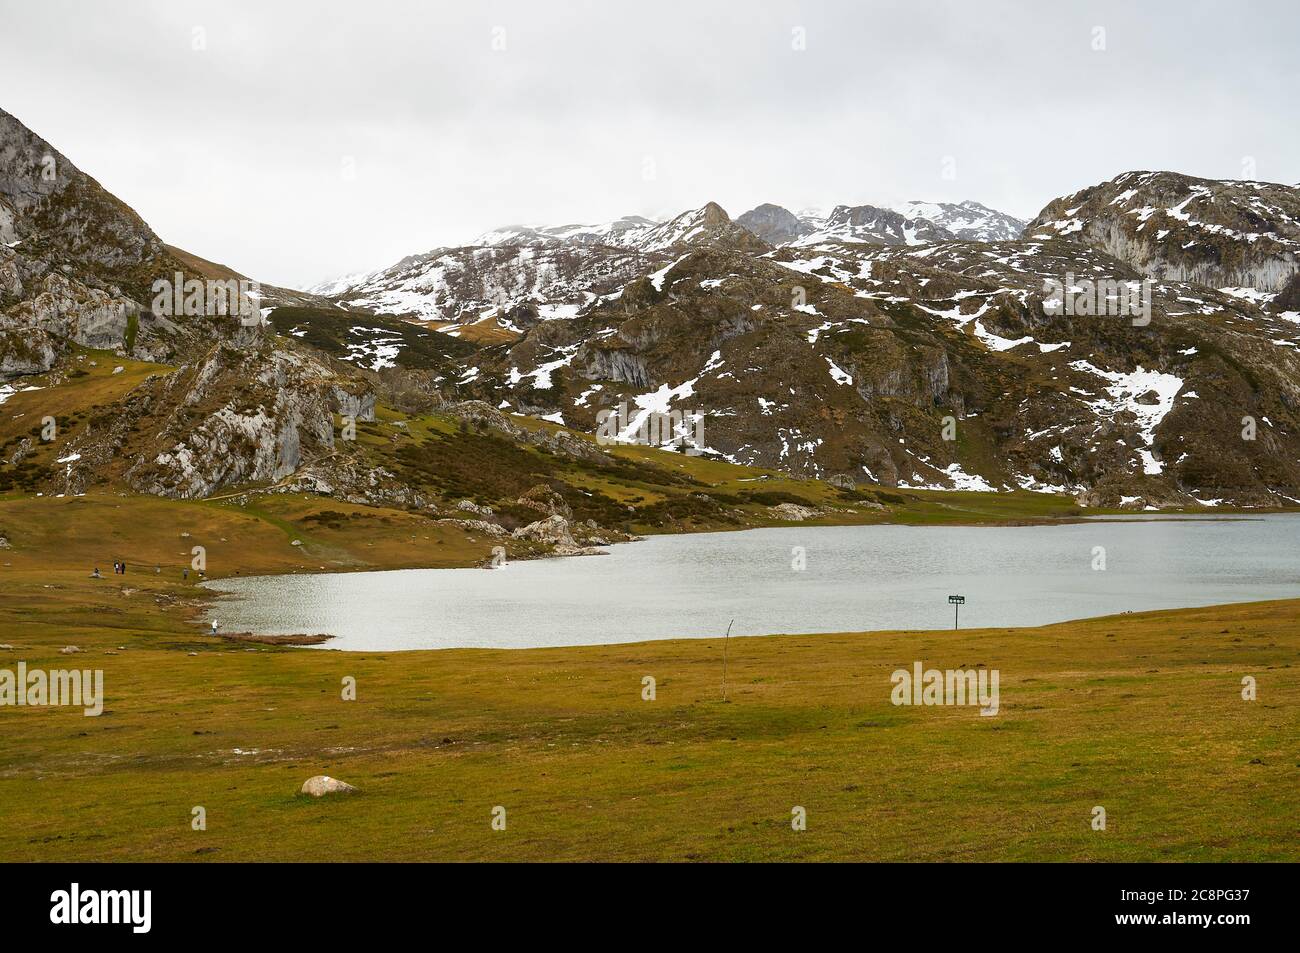 Randonneurs autour du lac glaciaire Lago Ercina par une journée nuageux avec de la neige dans les pics environnants (Cangas de Onís, Parc national Picos de Europa, Asturies, Espagne) Banque D'Images